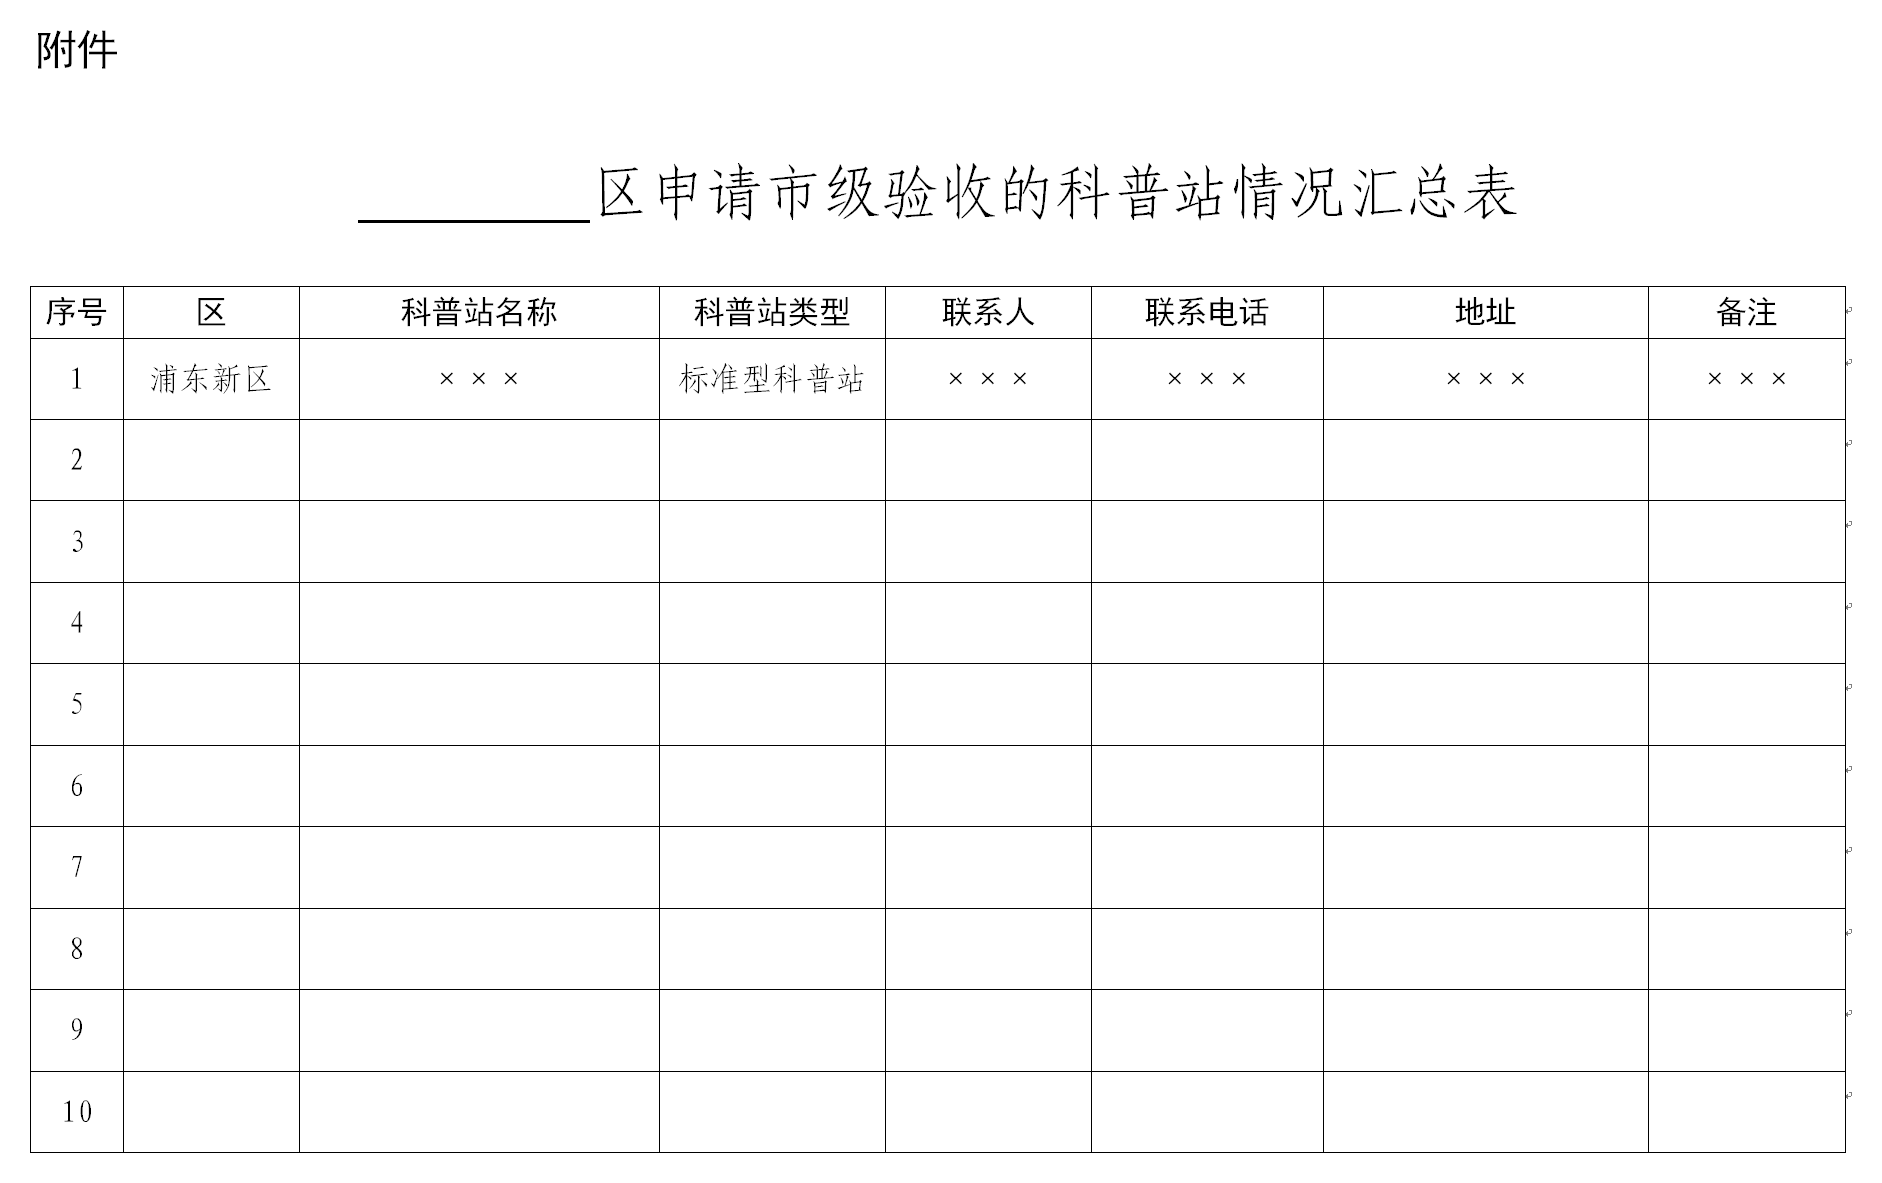 上海市食品药品安全委员会办公室关于开展食品药品科普站分类管理的通知（沪食药安办20240004号）